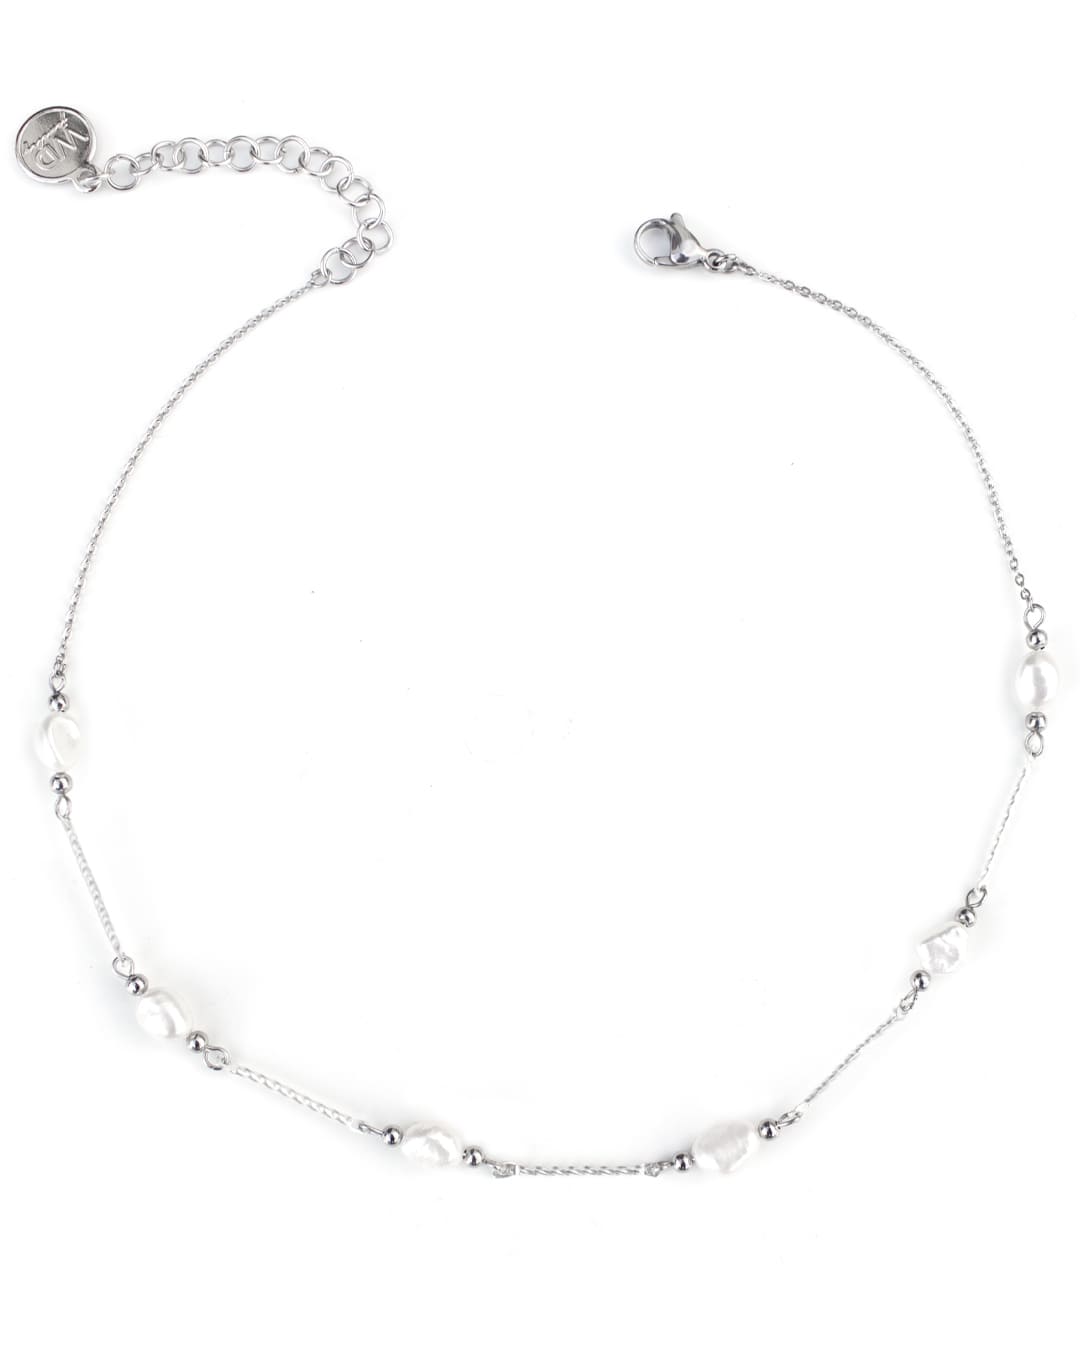 Coco Silver Necklace